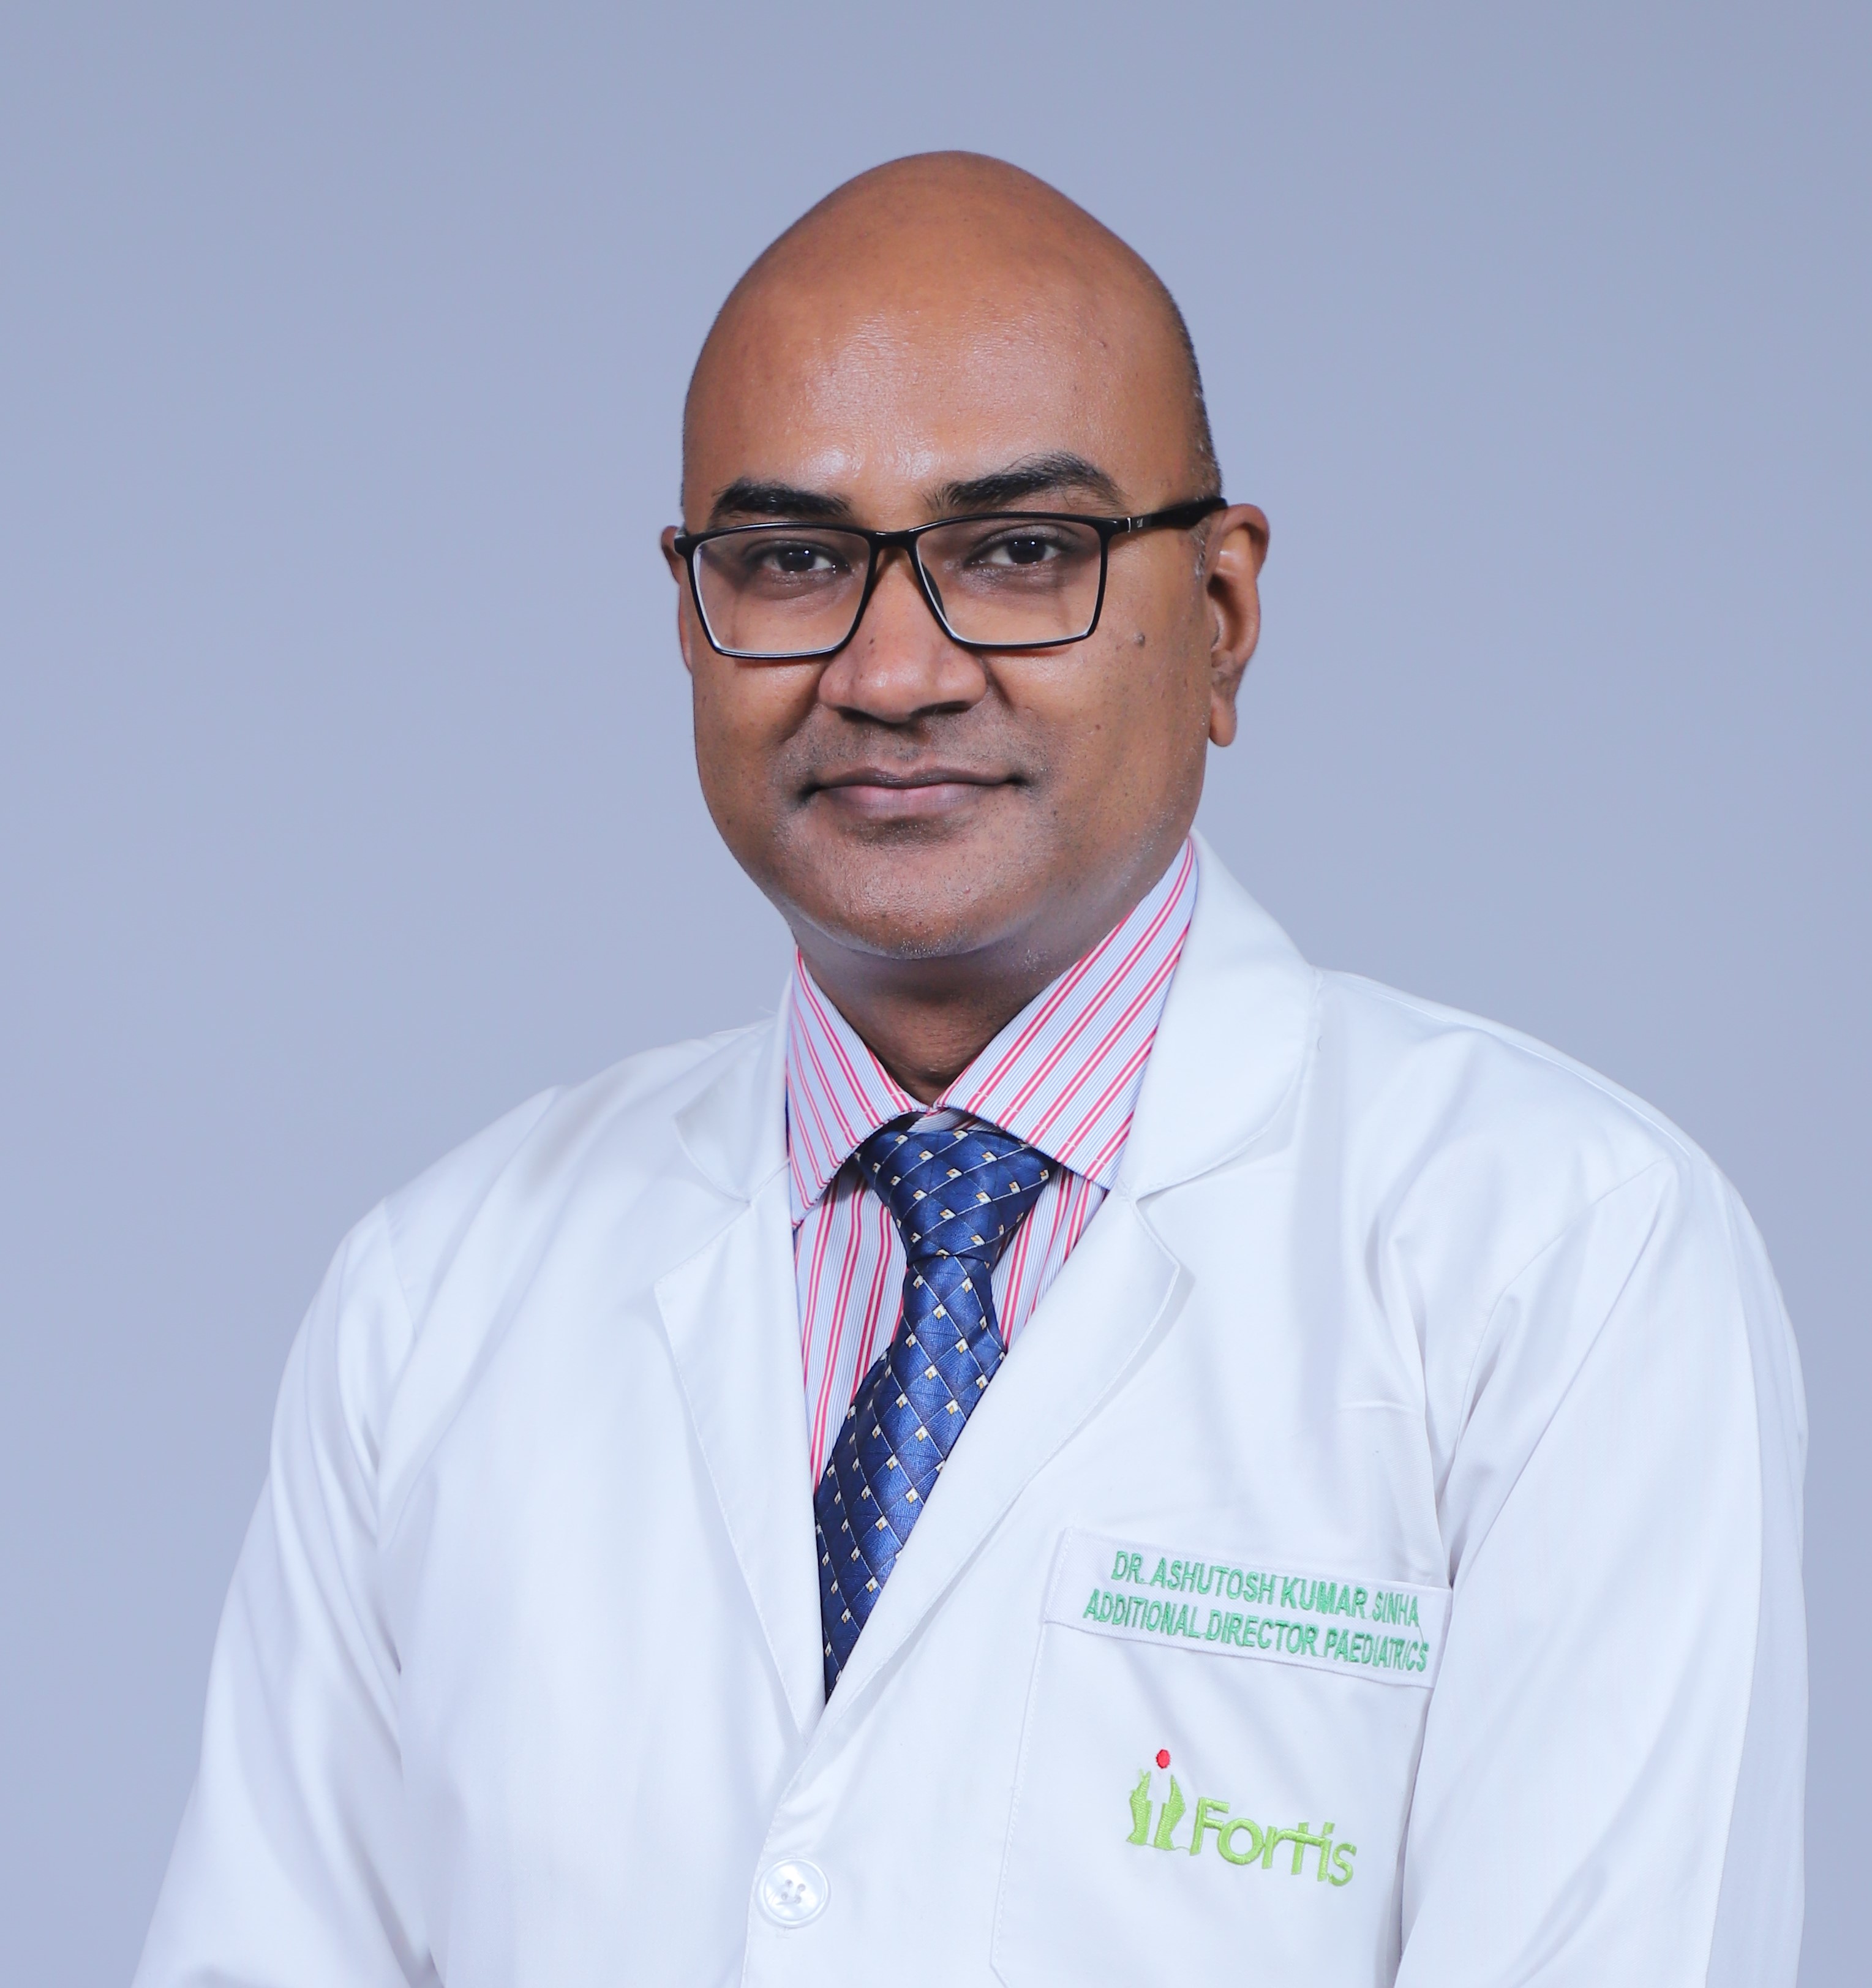 Dr. Ashutosh Kumar Sinha